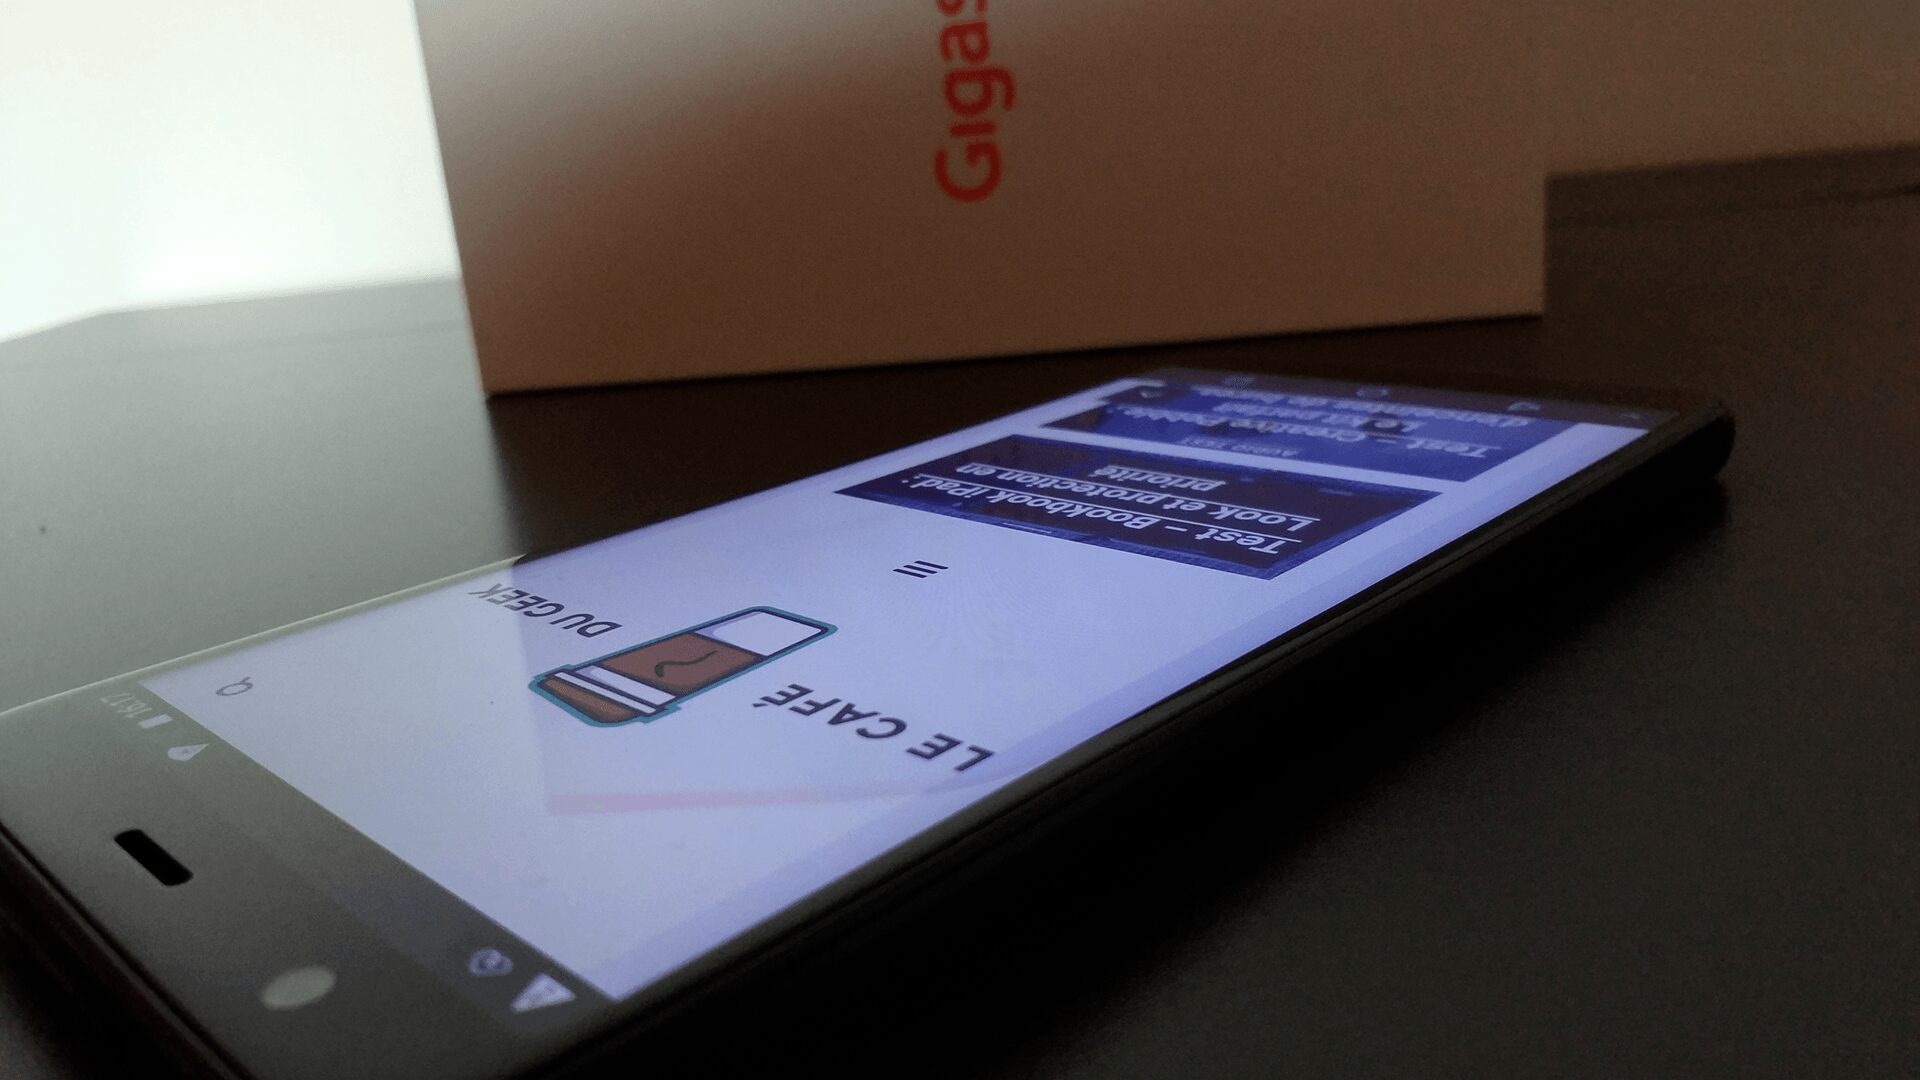 GS370 2 1 TEST – Gigaset GS370 : Smartphone moyen de gamme qui vaut le détour ! Android